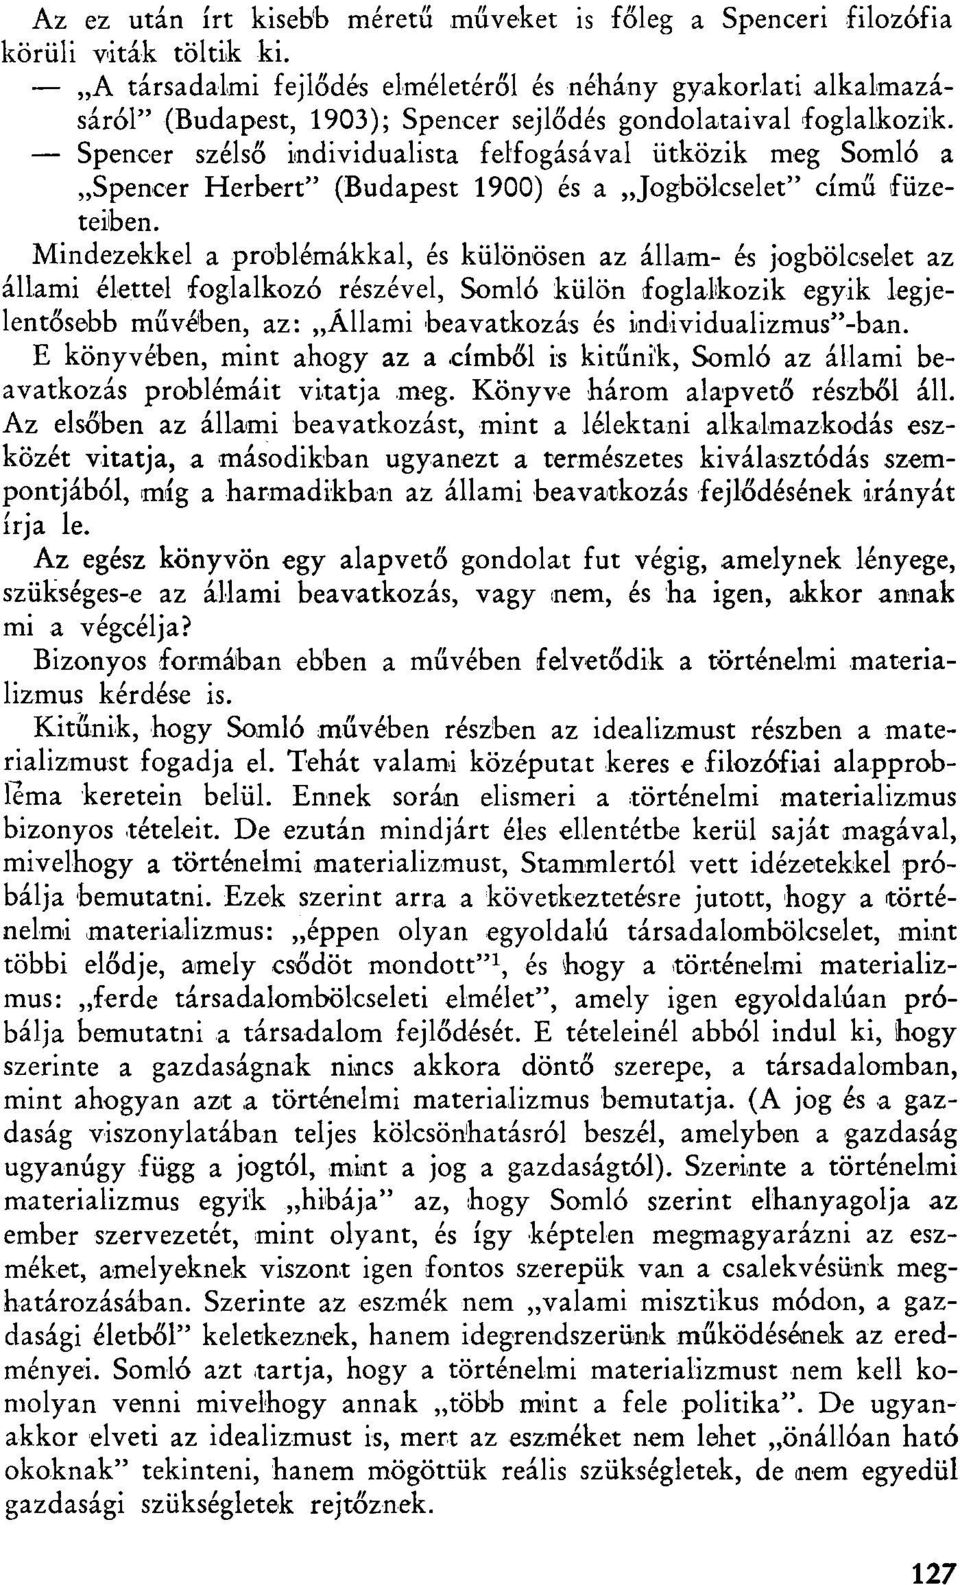 Spencer szélső individualista felfogásával ütközik meg Somló a Spencer Herbert" (Budapest 1900) és a Jogbölcselet" című füzeteiben.